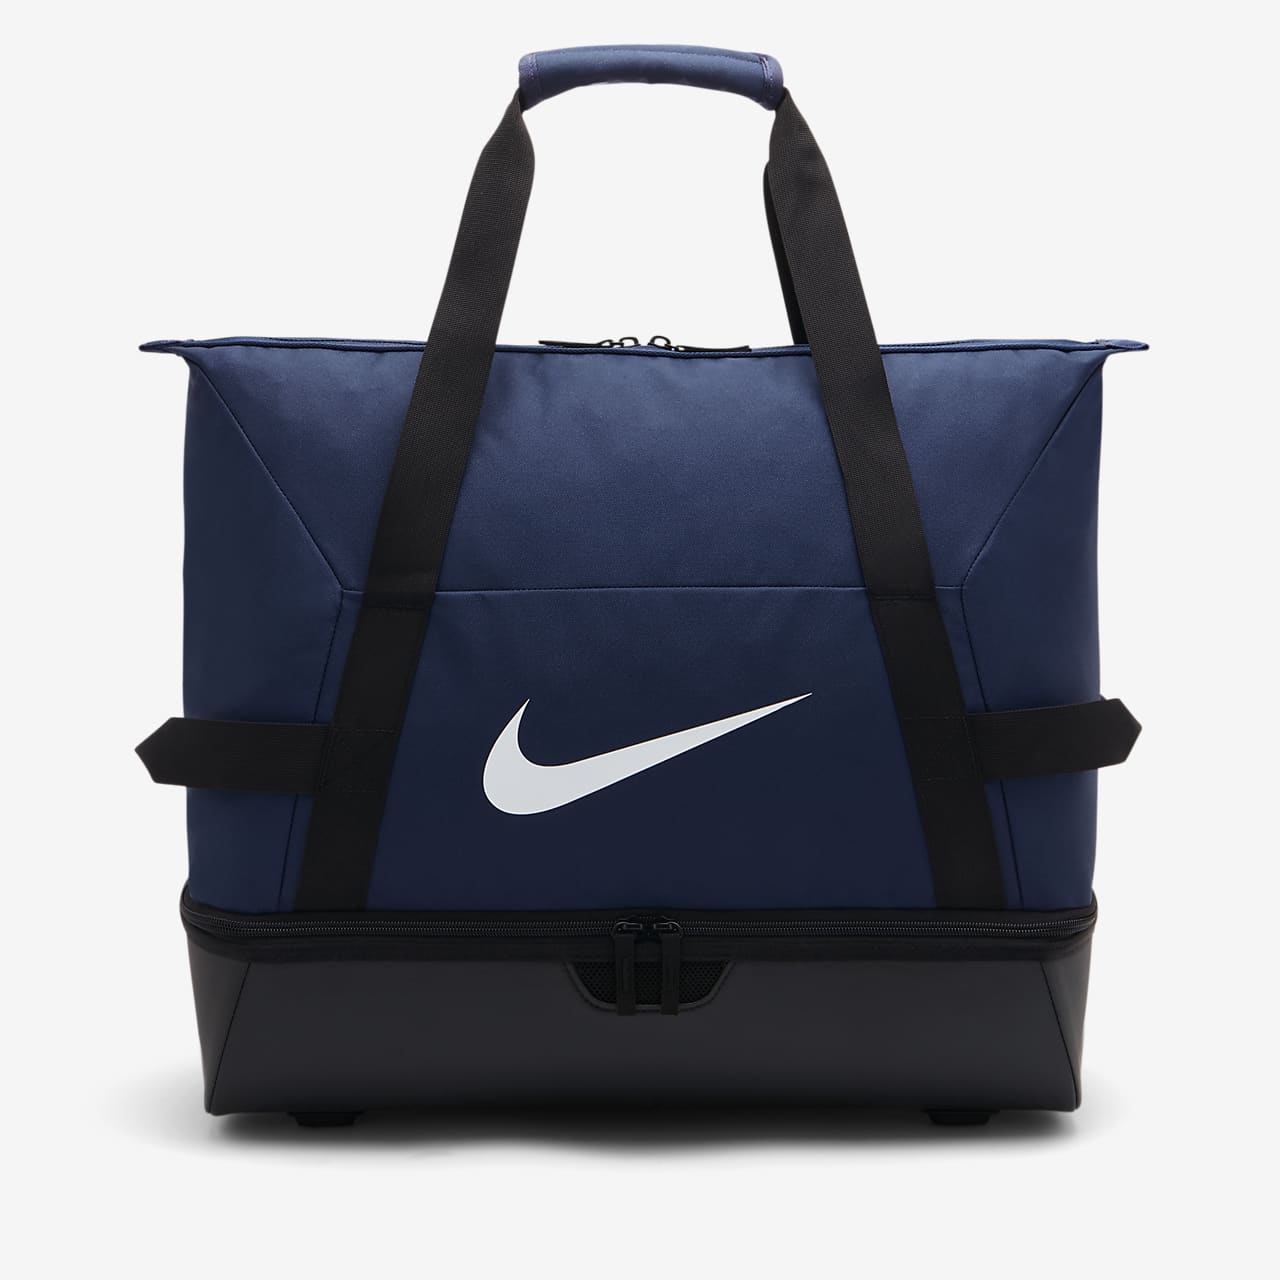 Fotbalová sportovní taška (velikost L) Nike Academy Team Hardcase